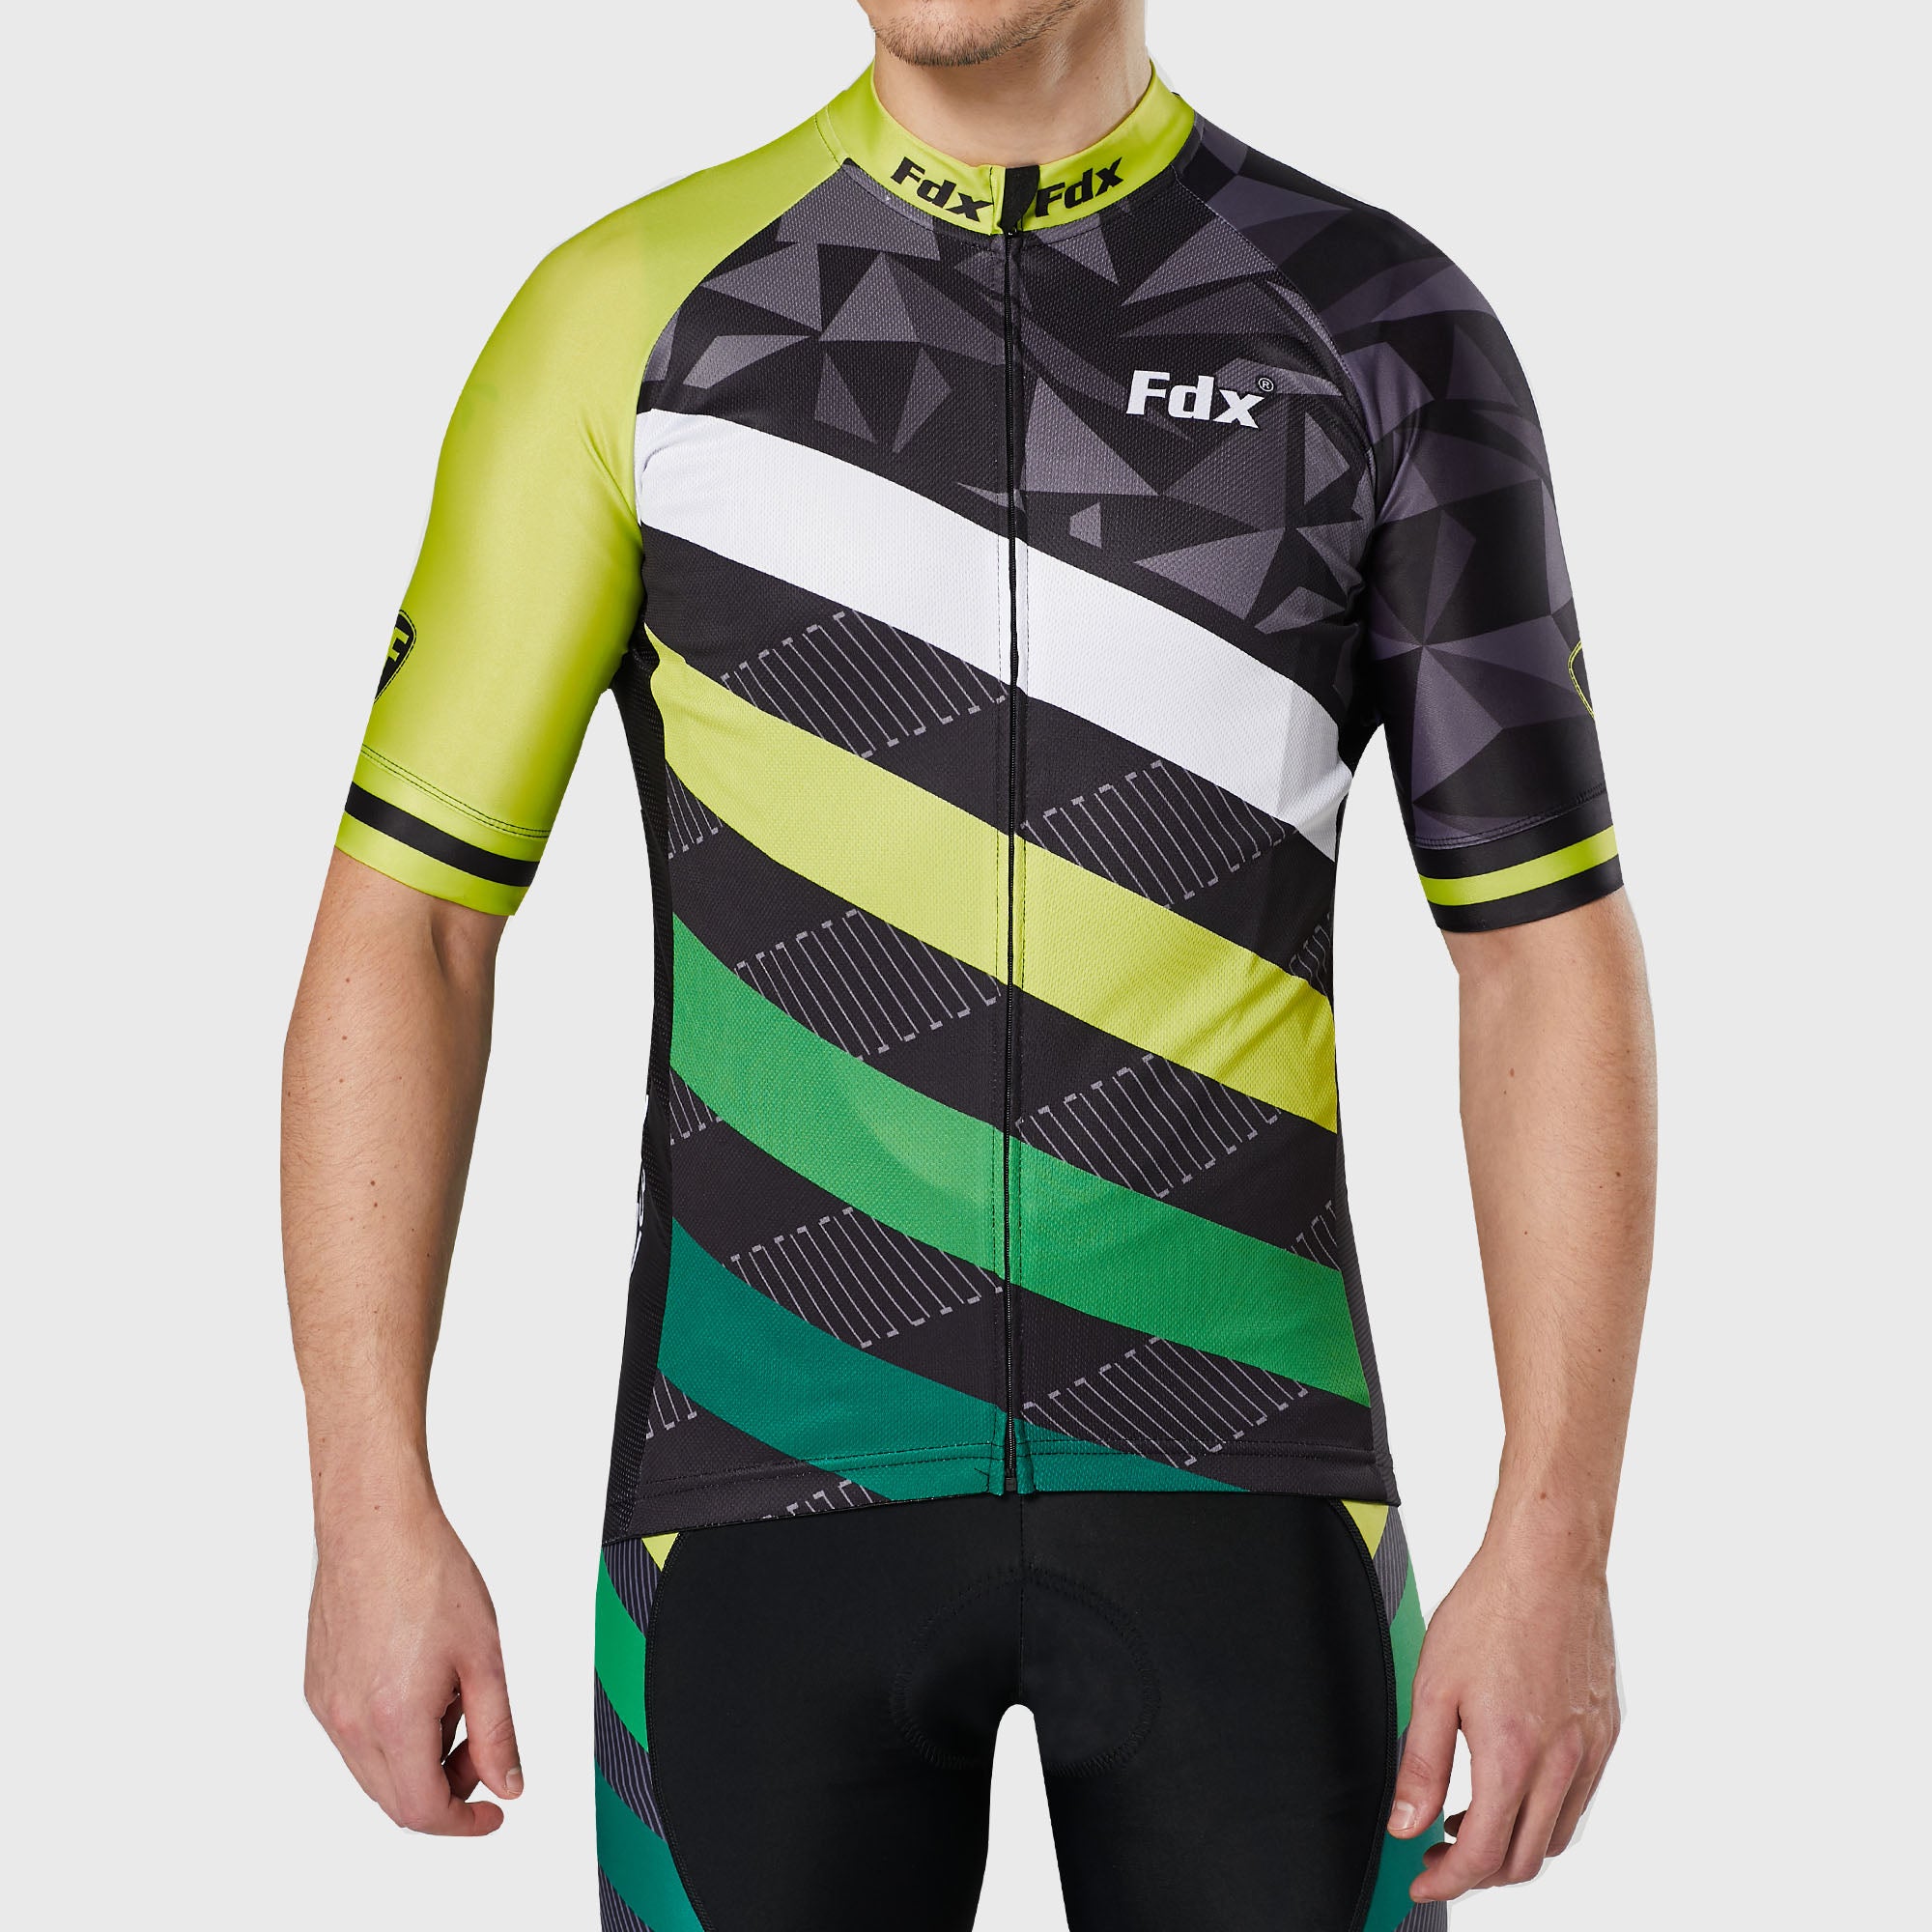 Fdx Mens Yellow & Black Short Sleeve Cycling Jersey for Summer Best Road Bike Wear Top Light Weight, Full Zipper, Pockets & Hi-viz Reflectors - Equin